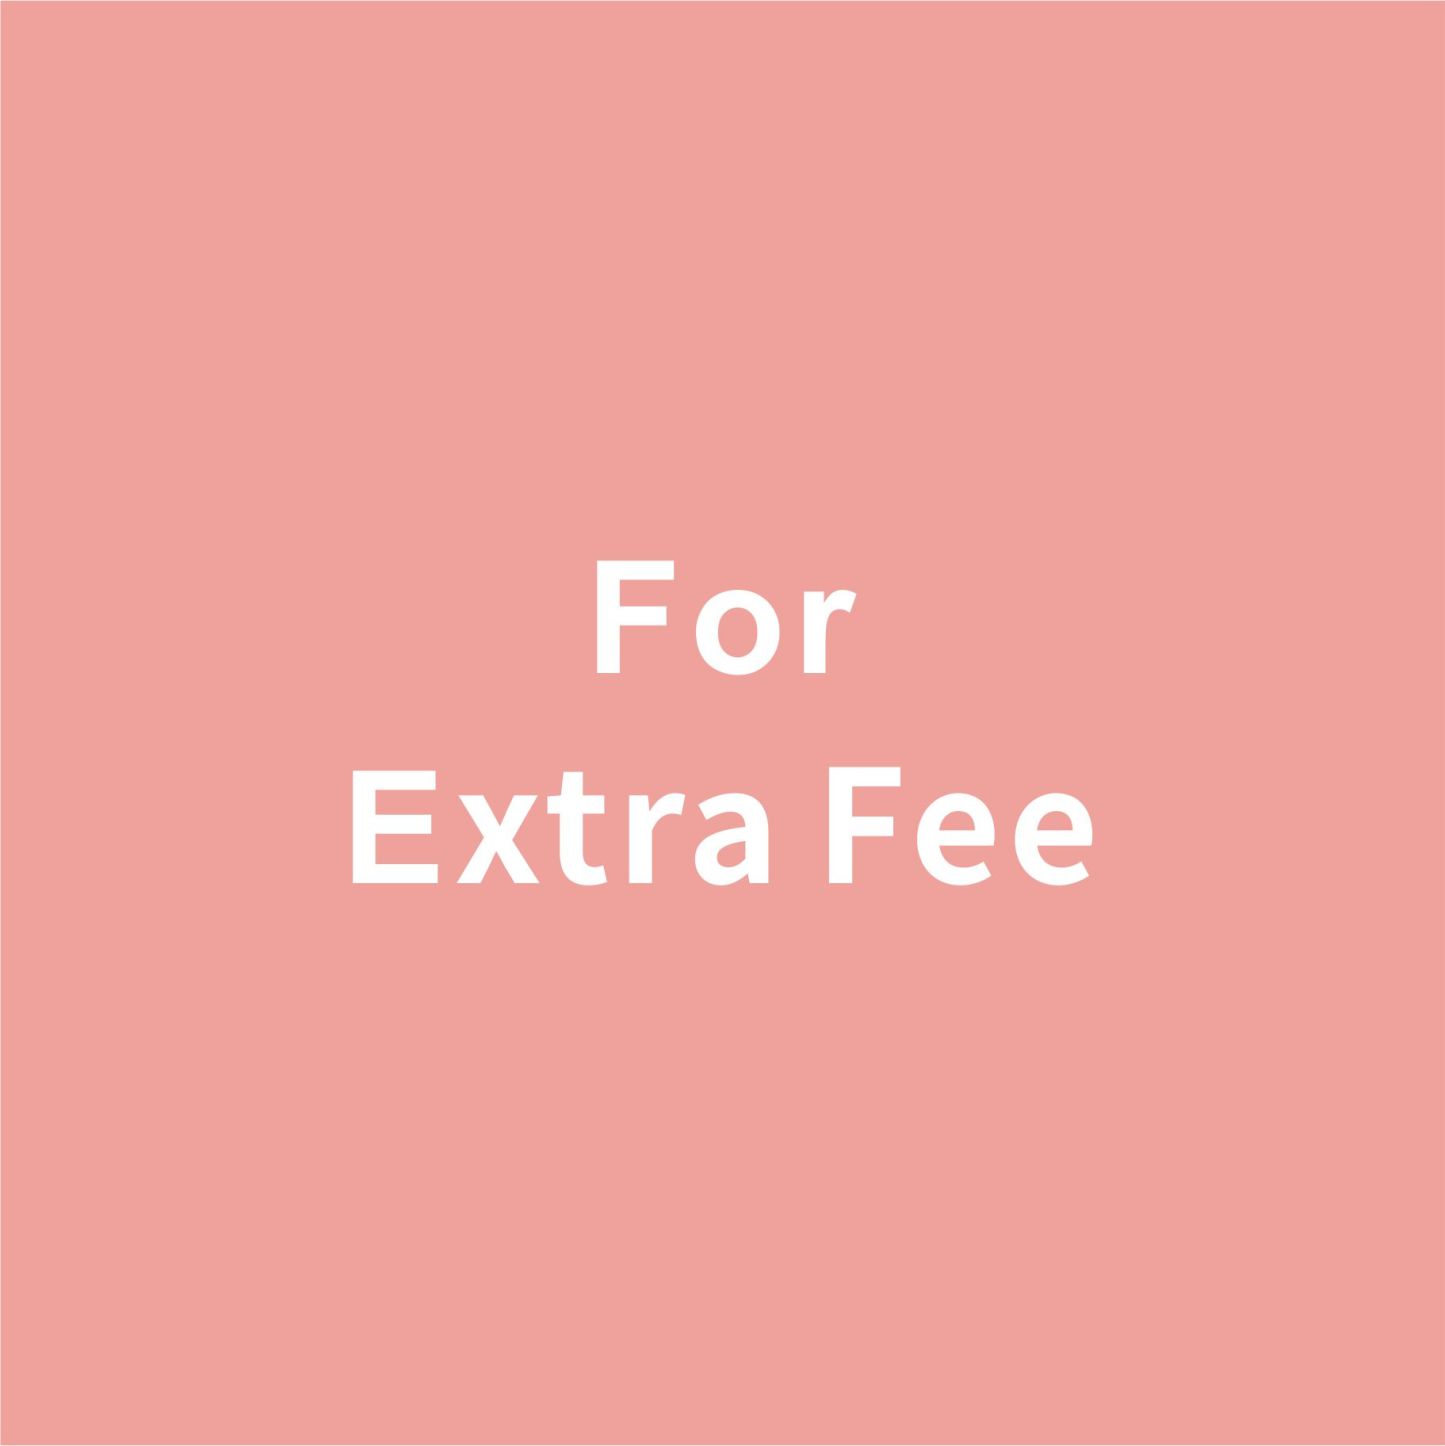 Extra Fee